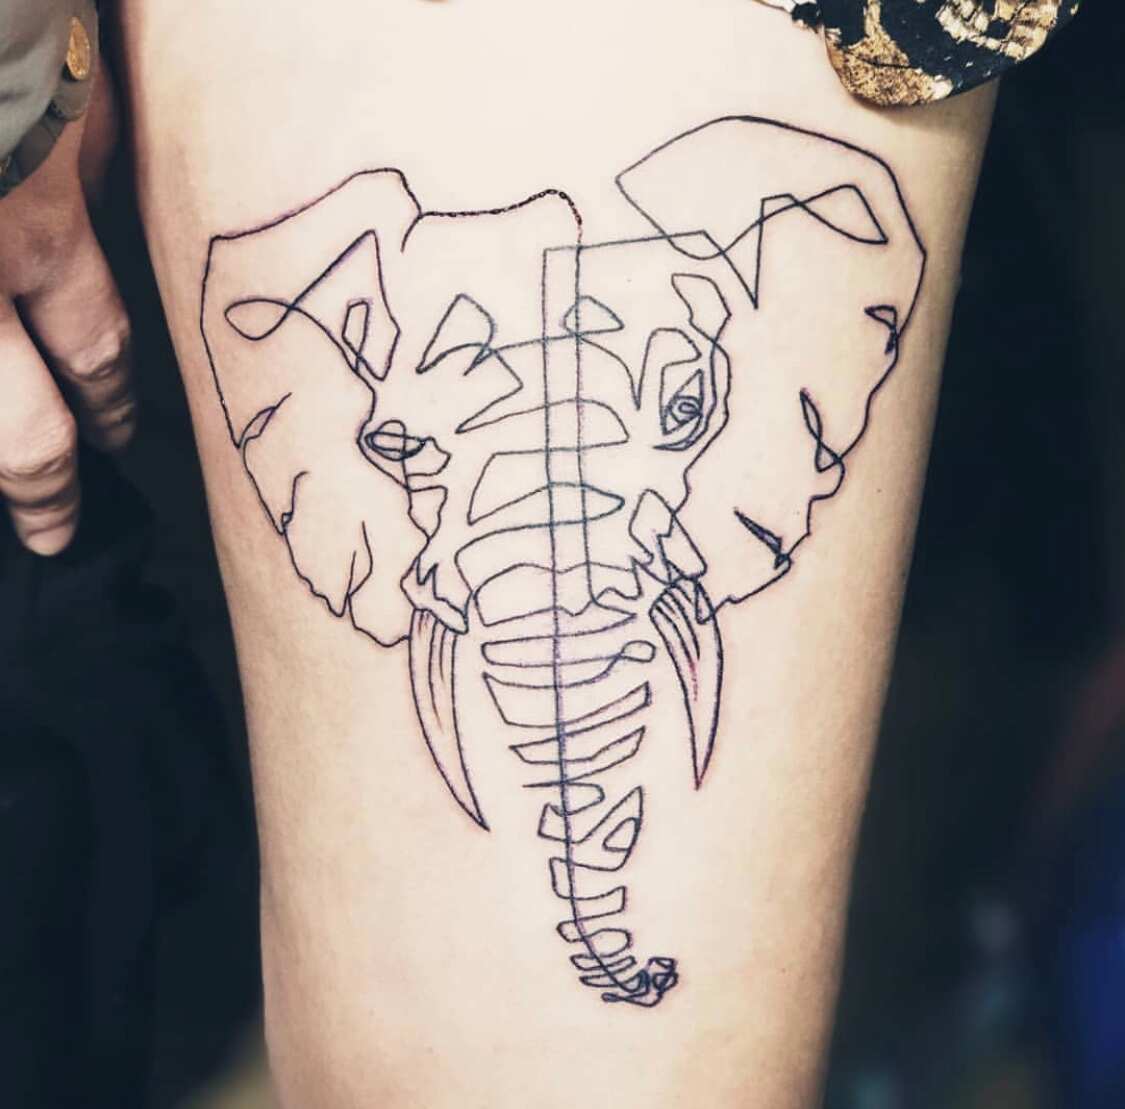 Fun feminine elephant. • • • • •... - Elly Bordwell Tattoos | Facebook